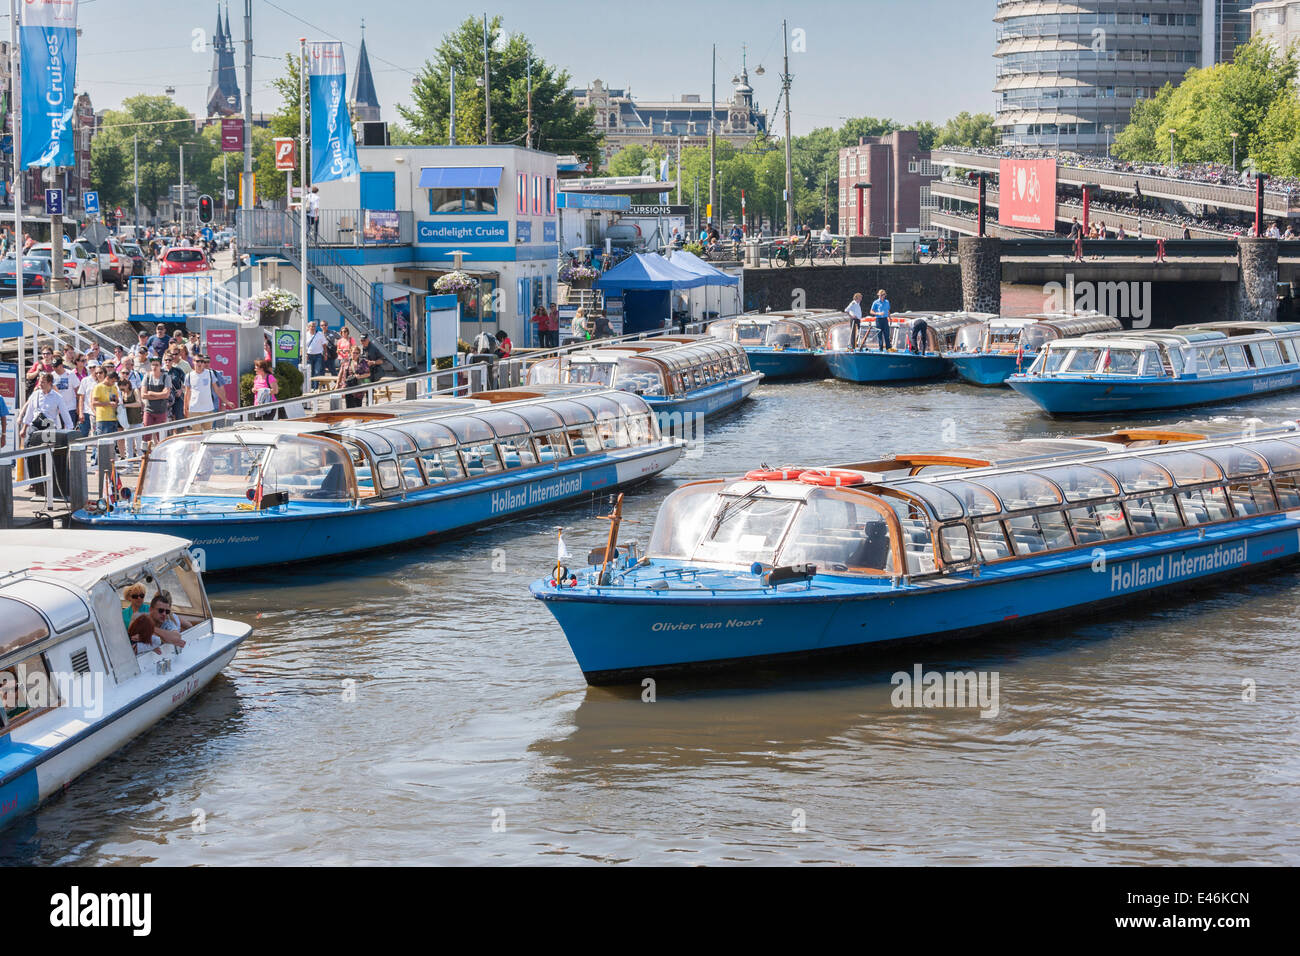 La Stazione Centrale di Amsterdam crociera fodera barche fino a prendere i turisti su un canal tour attraverso canali più famosi del Grachtengordel. Foto Stock